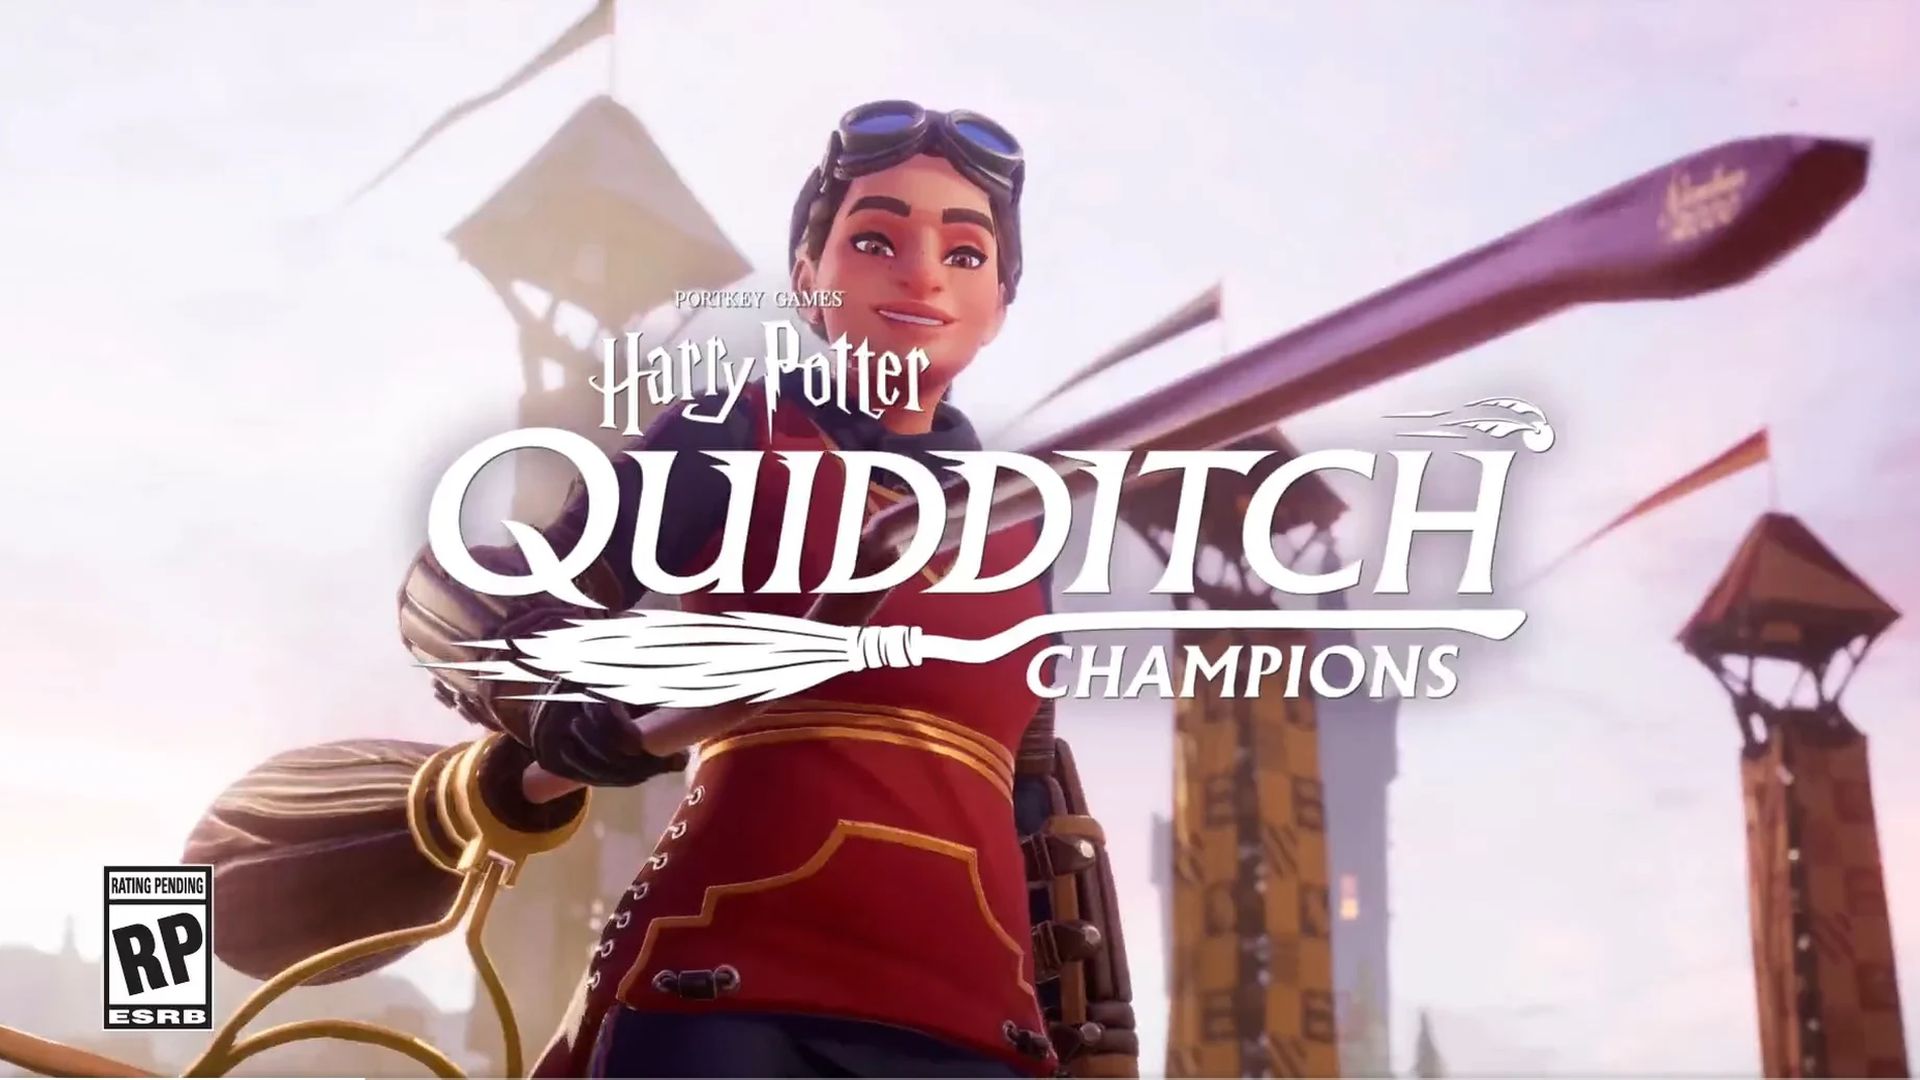 Harry Potter: Quidditch Champions ประกาศเปิดตัวบน PC และคอนโซล พร้อมให้ทดลองเล่นวันที่ 21-22 เมษายนนี้